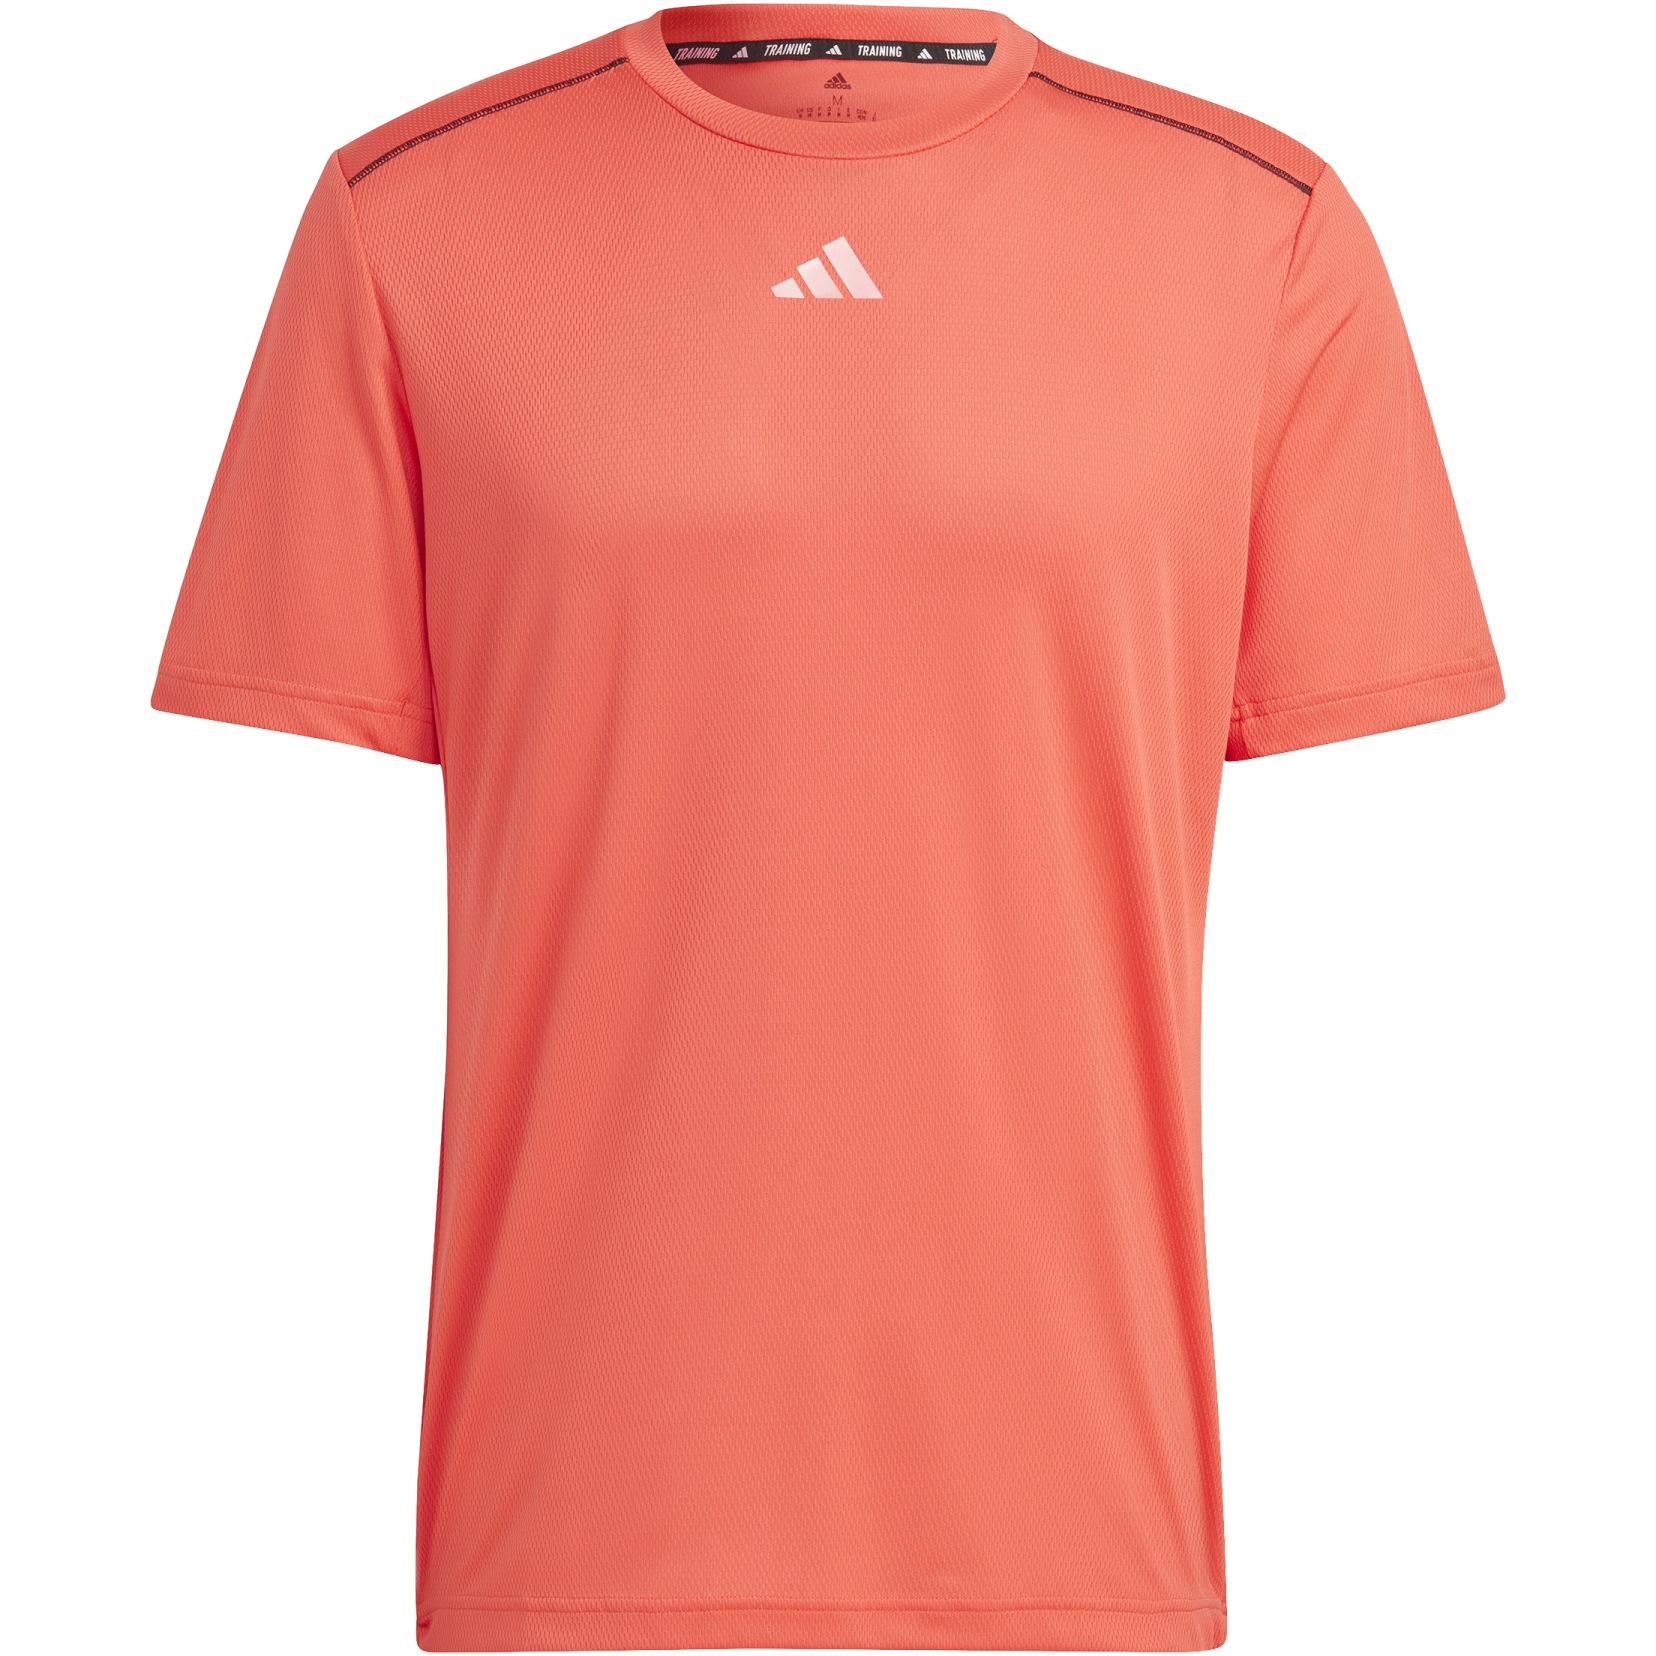 Bild von adidas Workout Base Logo T-Shirt Herren - bright red/transparent IB7903